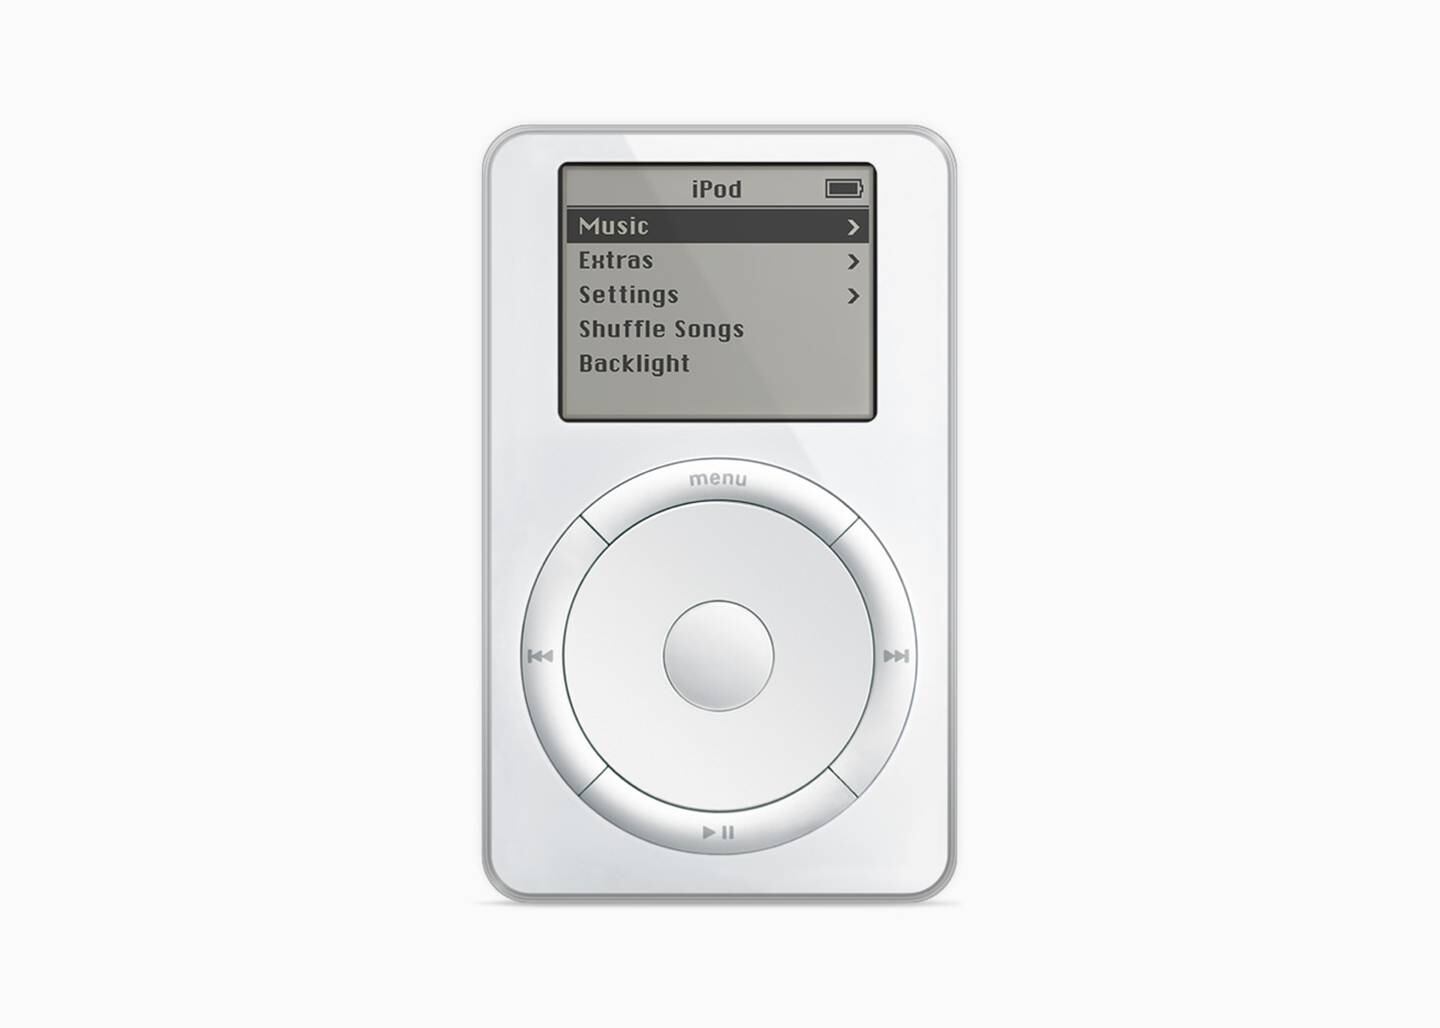 El iPod original, lanzado en 2001.Fuente: Apple Inc.